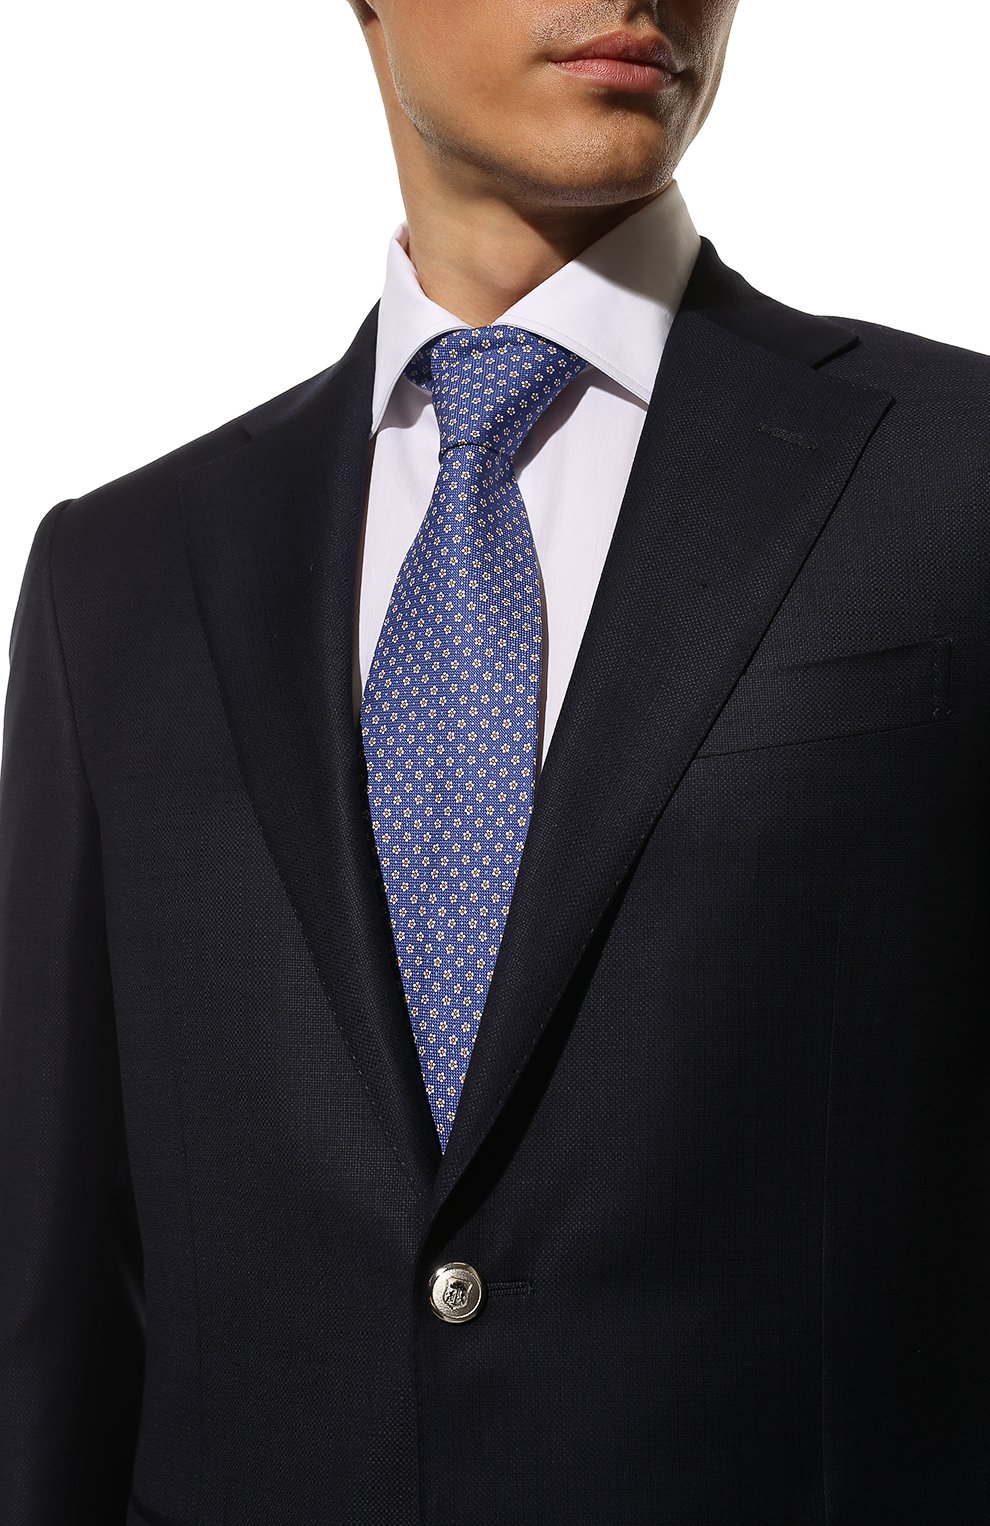 Мужской хлопковый галстук ETON синего цвета, арт. A000 33291 | Фото 2 (Принт: С принтом; Материал: Текстиль, Хлопок; Региональные ограничения белый список (Axapta Mercury): RU)